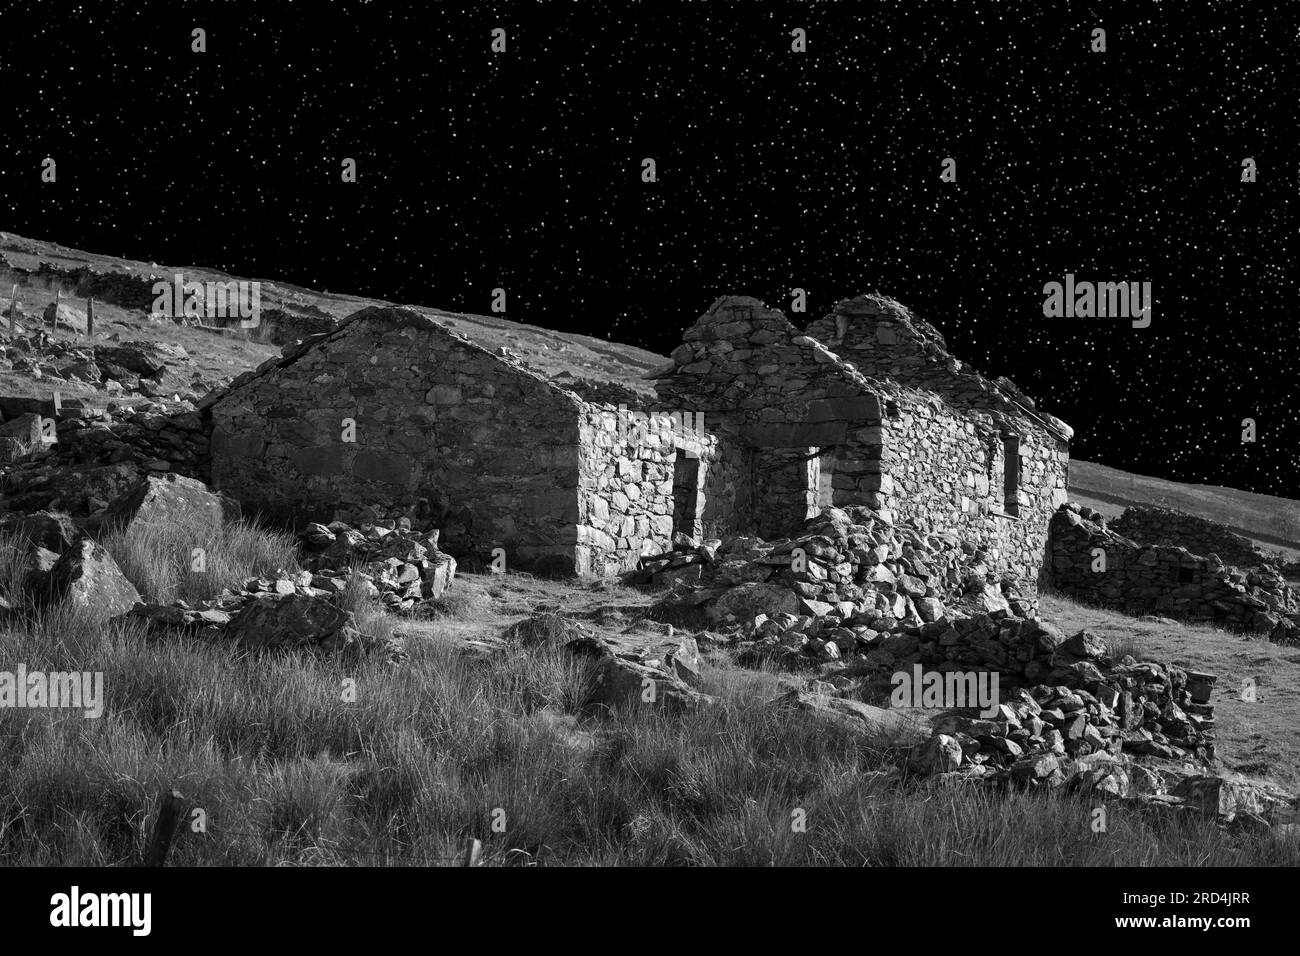 Questi cottage in pietra abbandonati si trovano vicino al bacino idrico di Marchllyn Bach a Snowdonia. L'immagine è stata fatta per sembrare notturna. Foto Stock